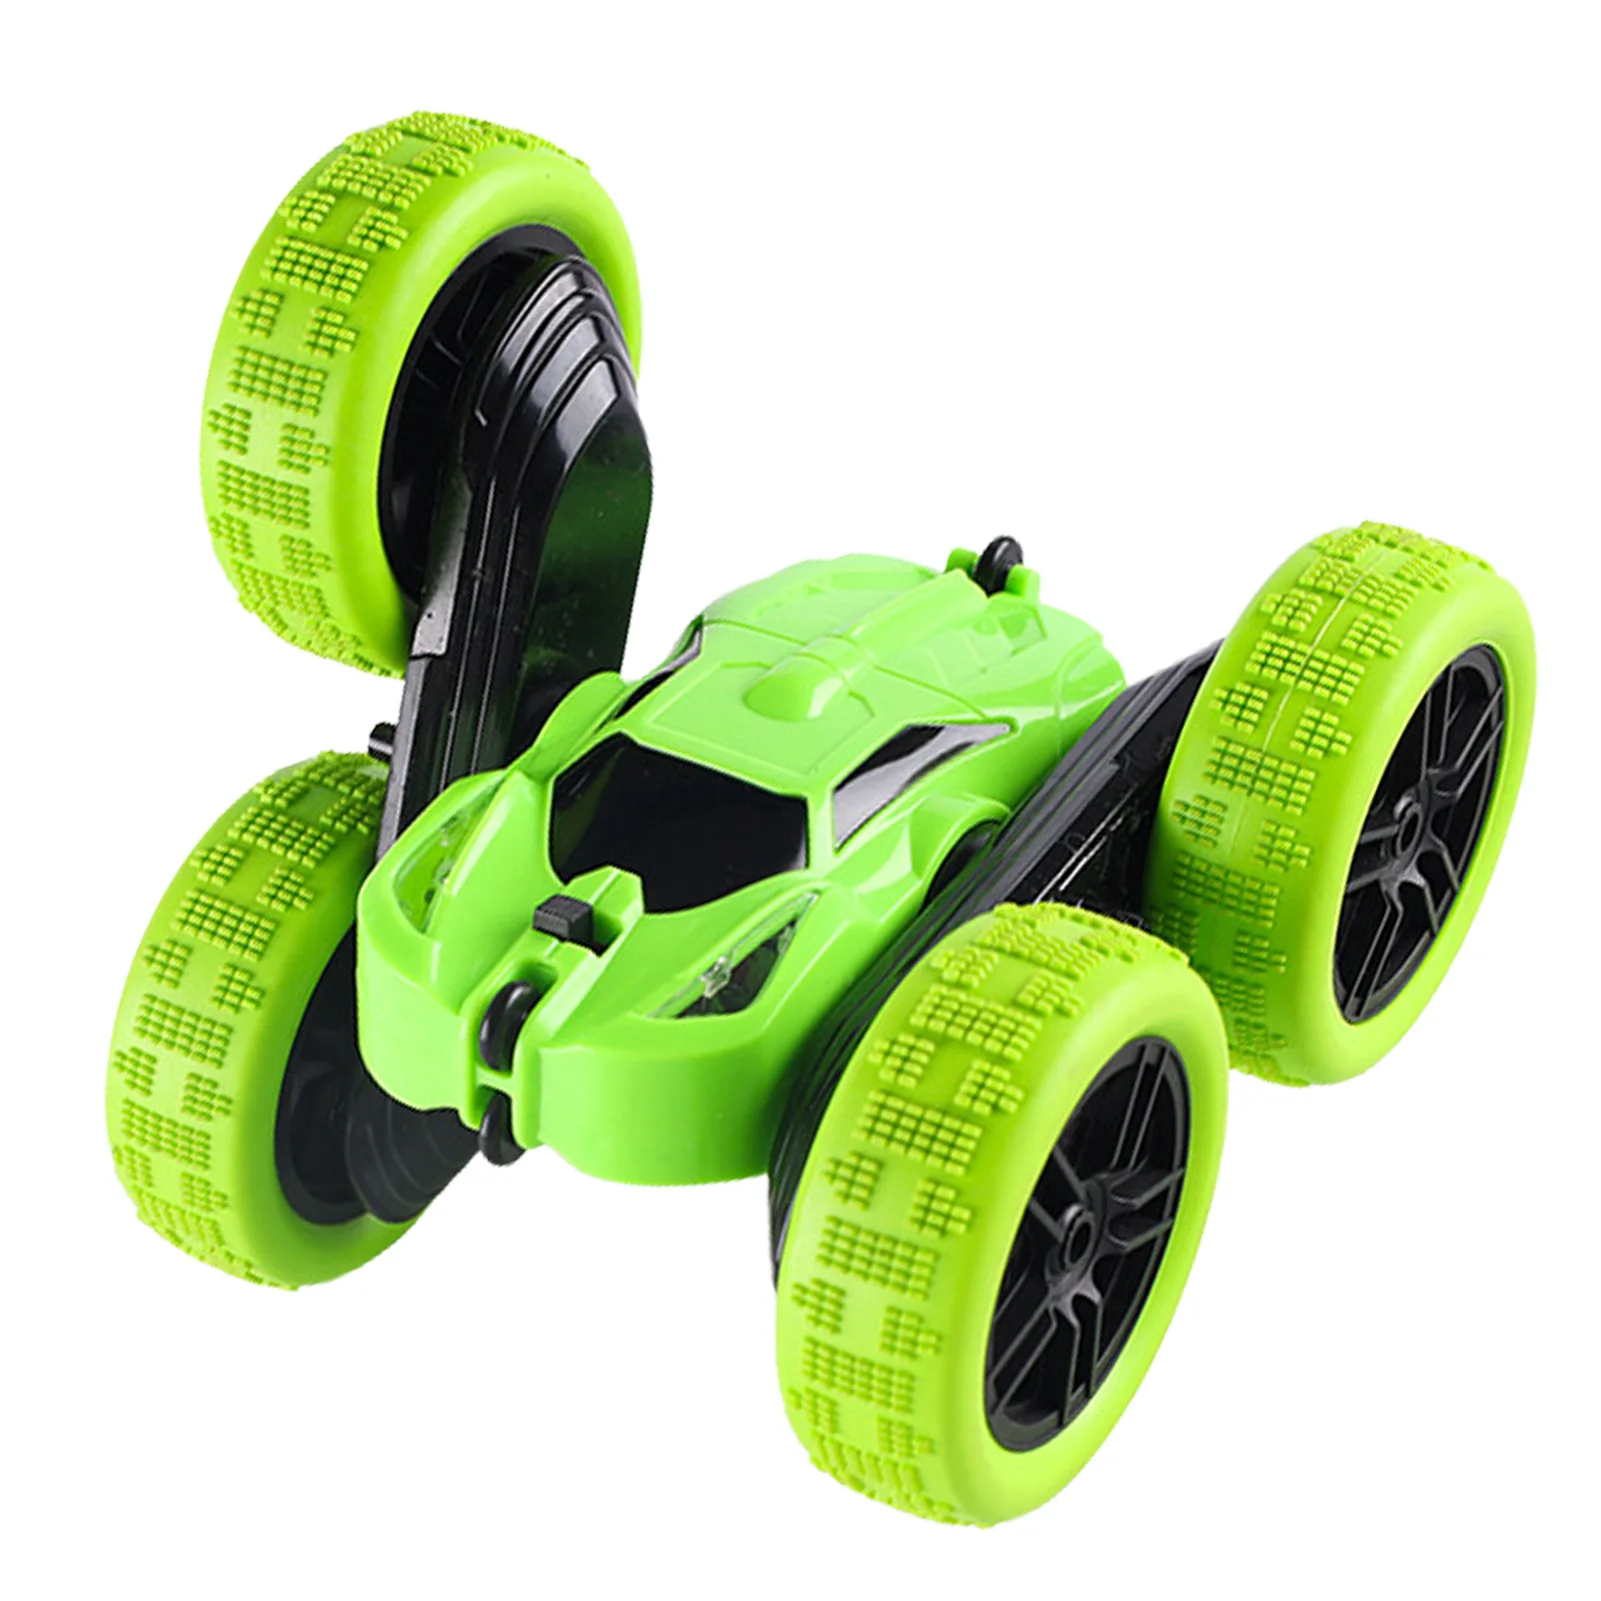 Fernbedienung 360° Amphibisch Offroad Kinder Spielzeug Toy gift RC Stunt Auto 